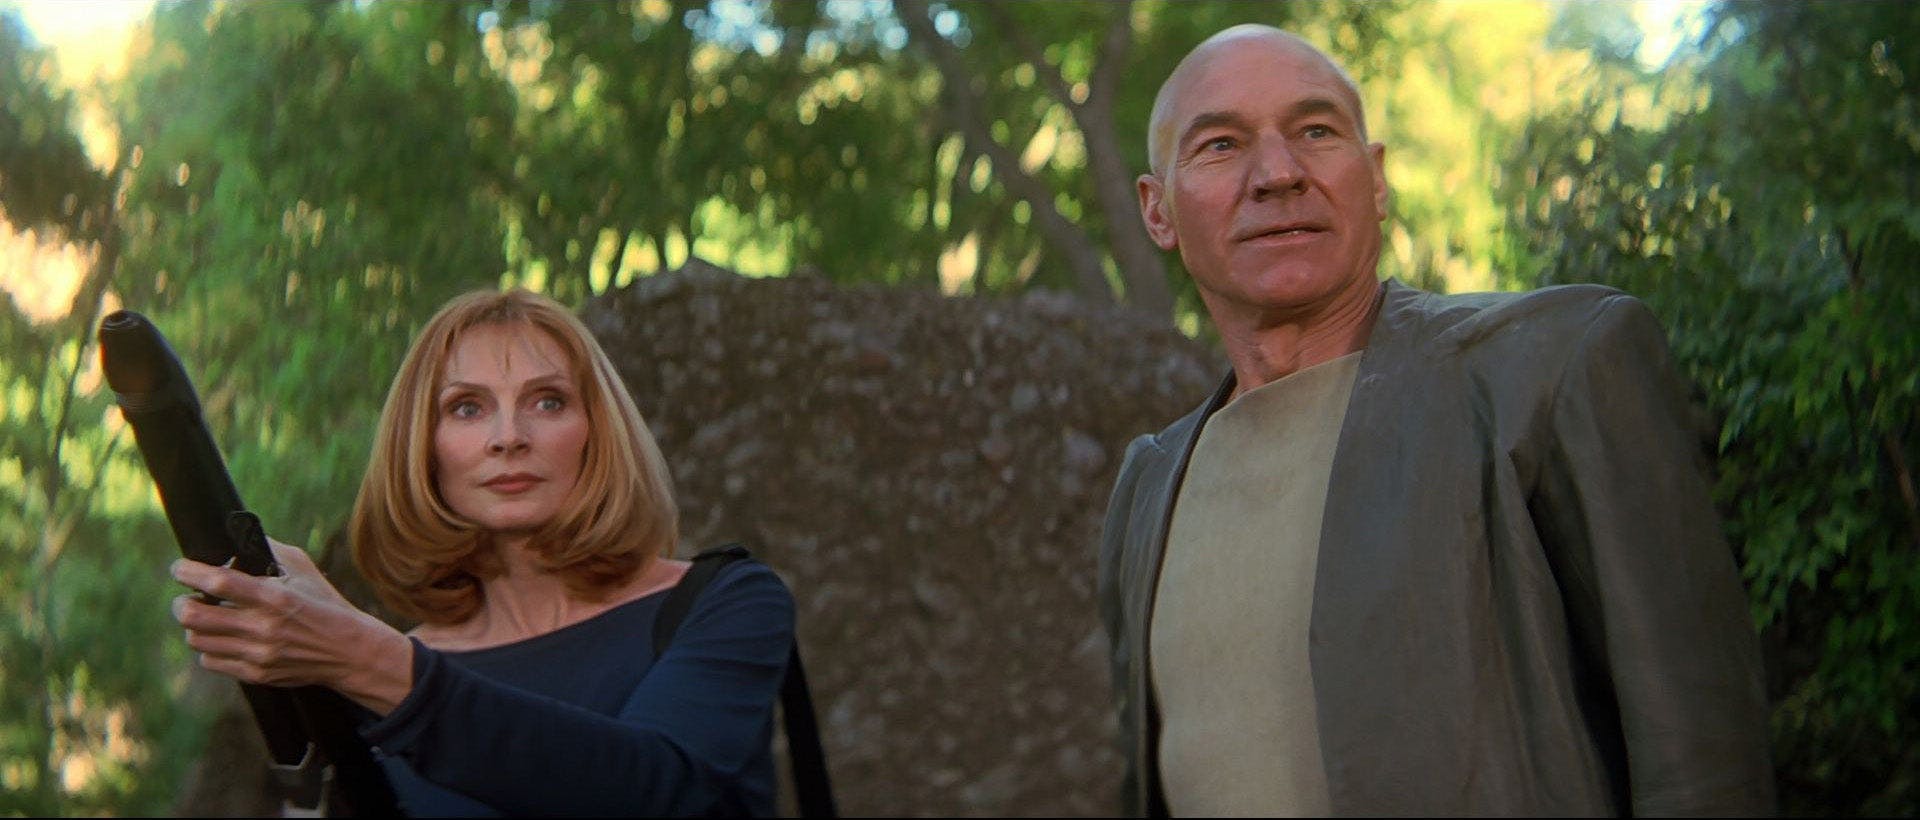 Crusher & Picard rebel in Star Trek Insurrection